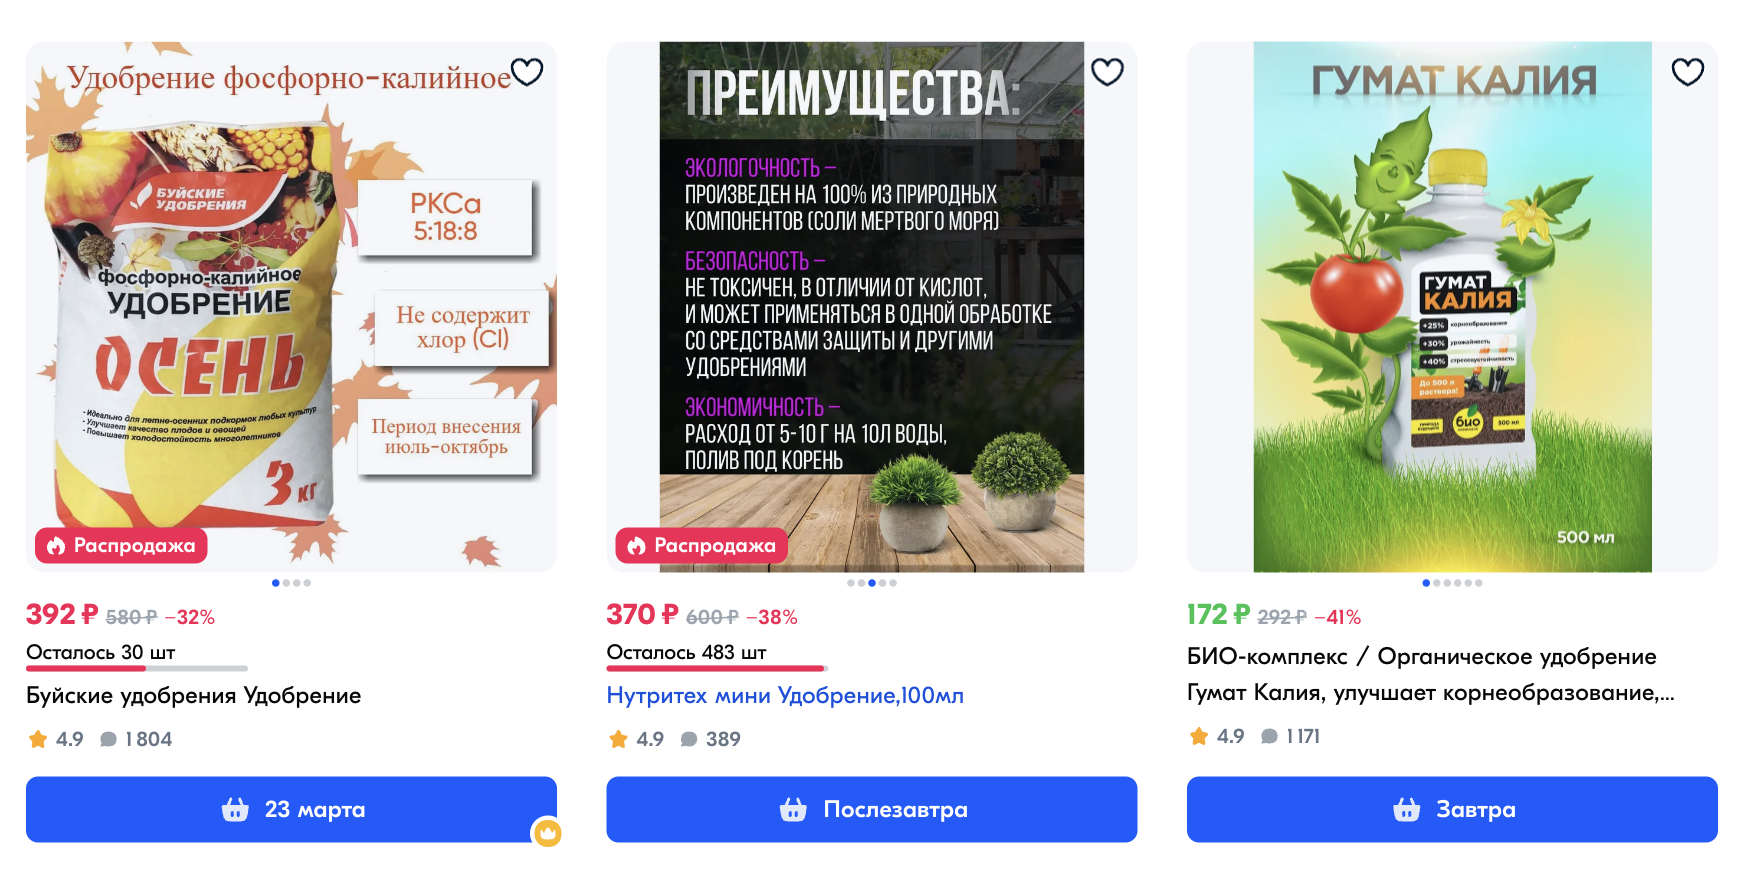 Калийные удобрения представлены в широком ассортименте на маркетплейсах. Фотография: ozon.ru